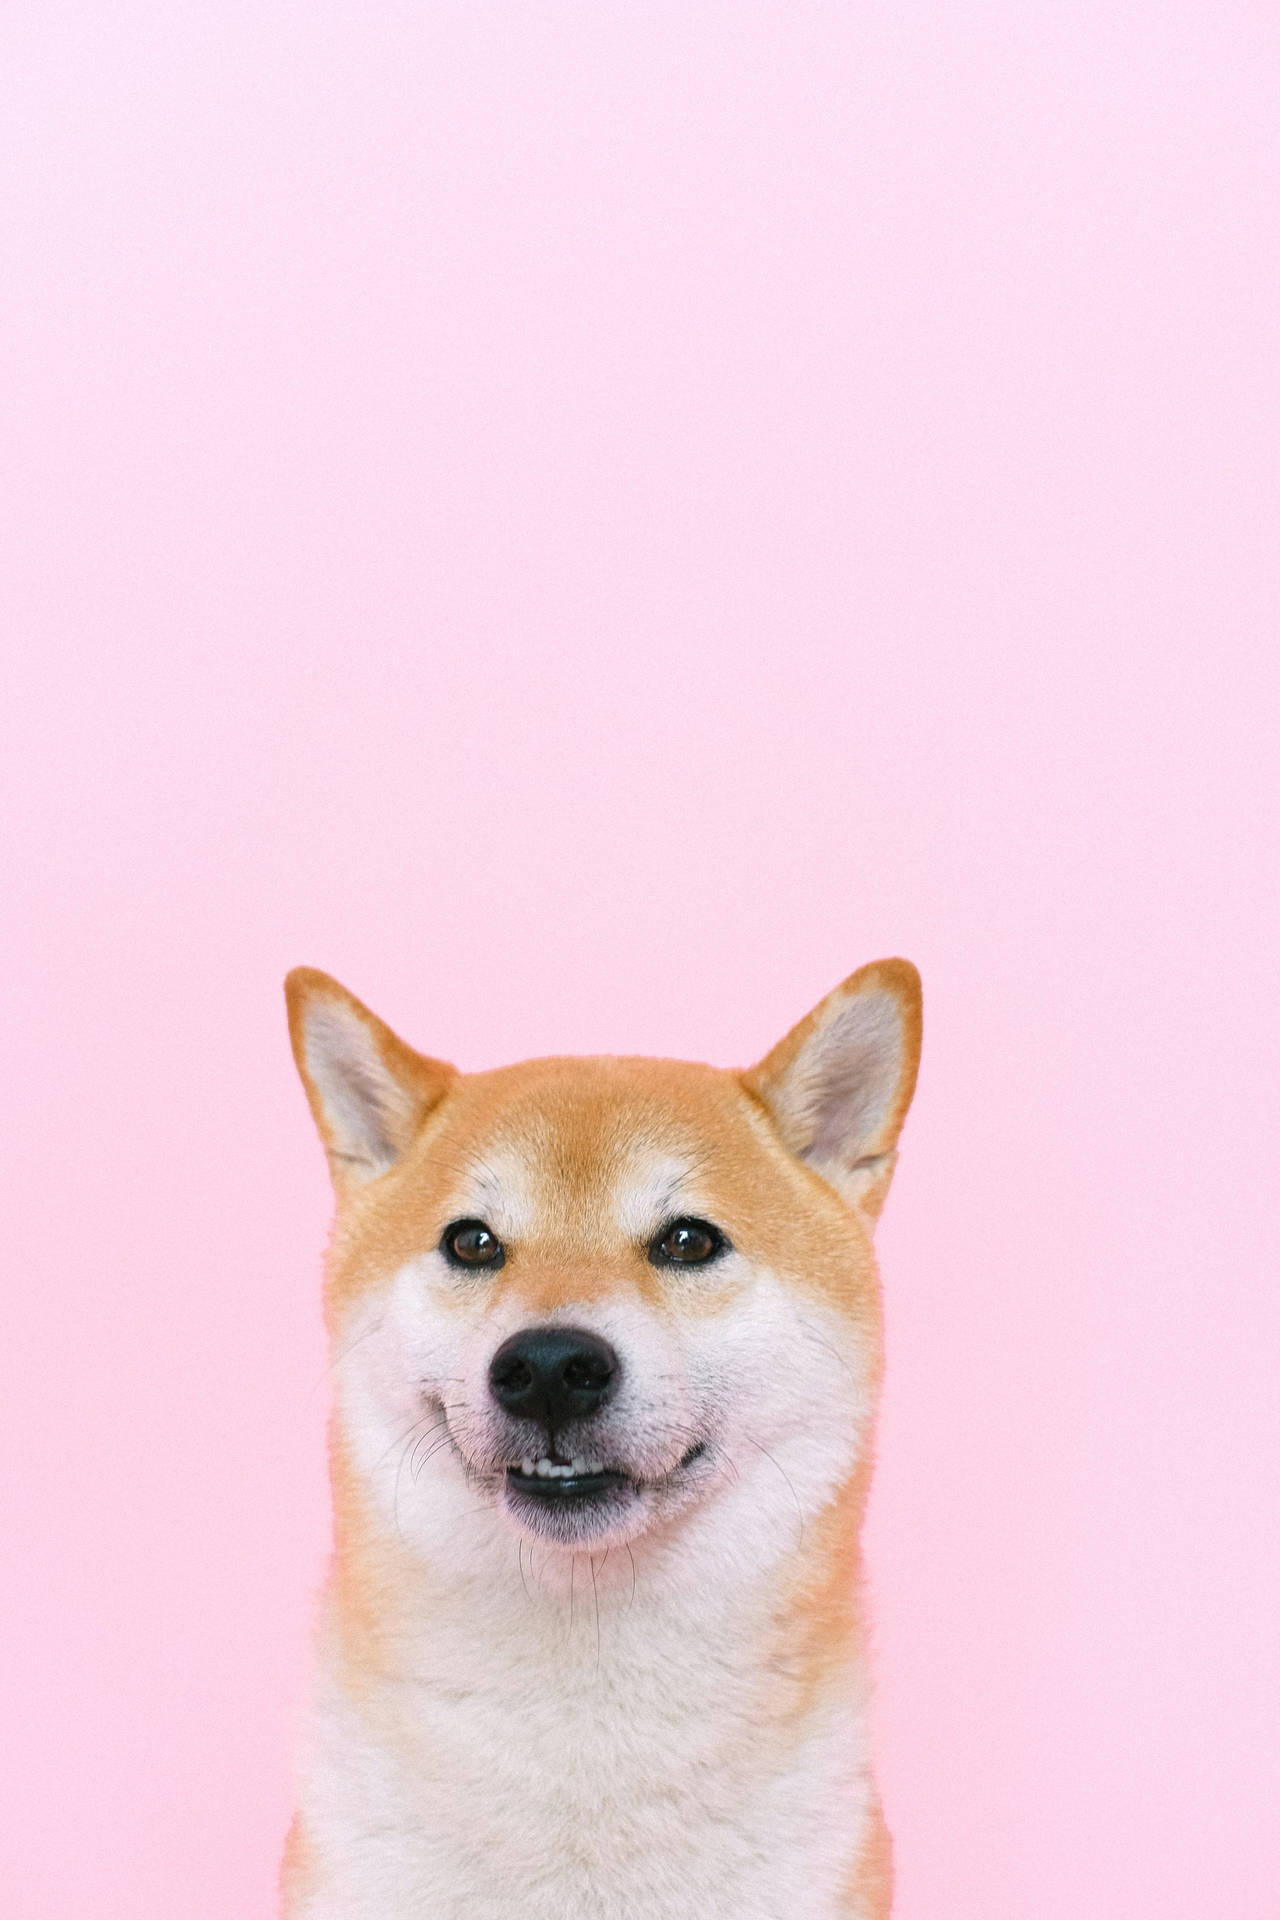 Corgi Dog On Pink Background